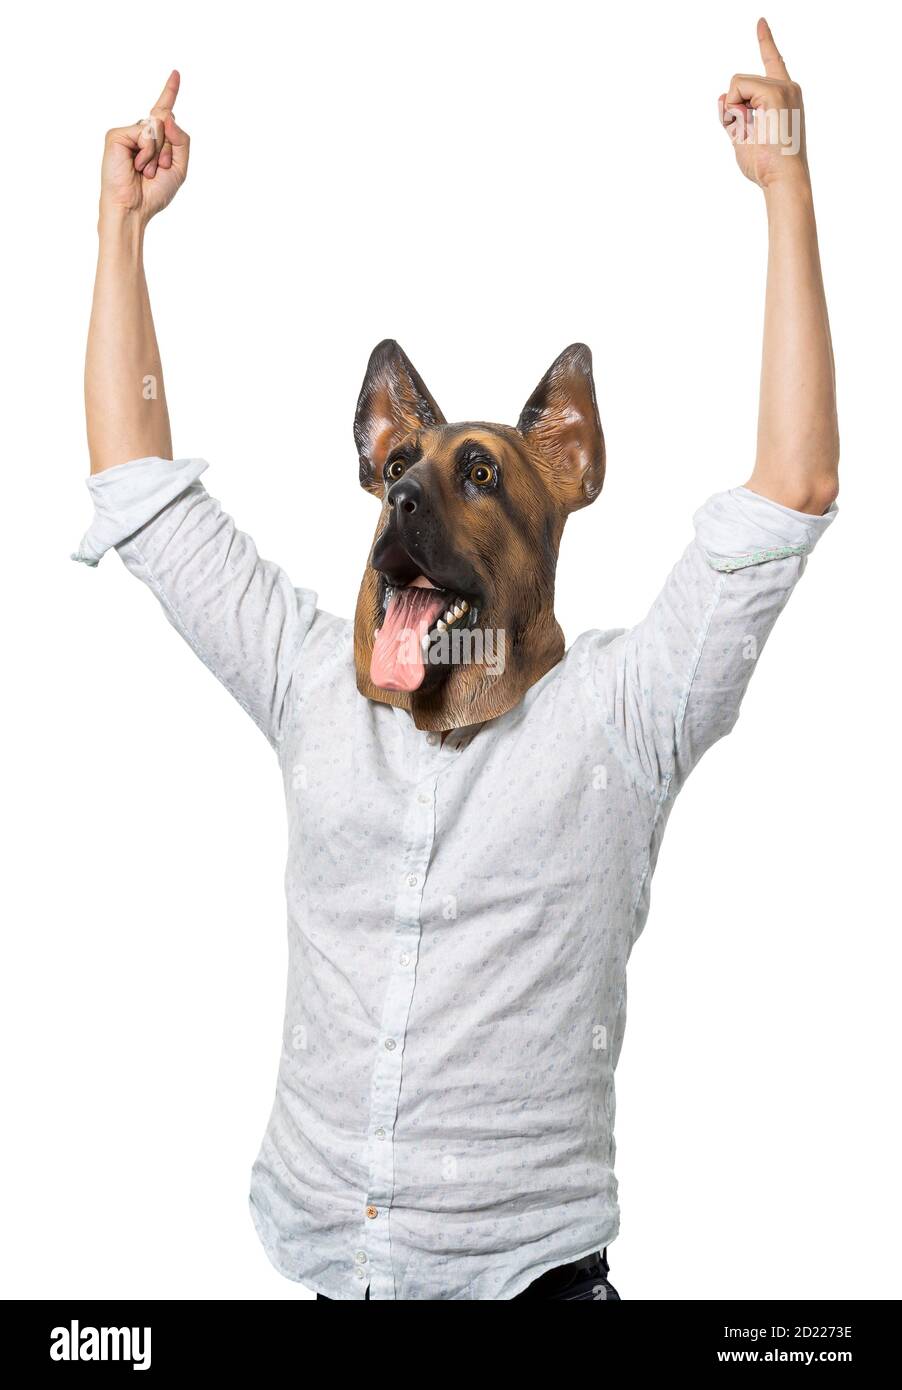 Homme portant un masque de chien avec les bras relevés pointant vers le haut en célébration. Arrière-plan blanc isolé. Prise de vue moyenne. Banque D'Images